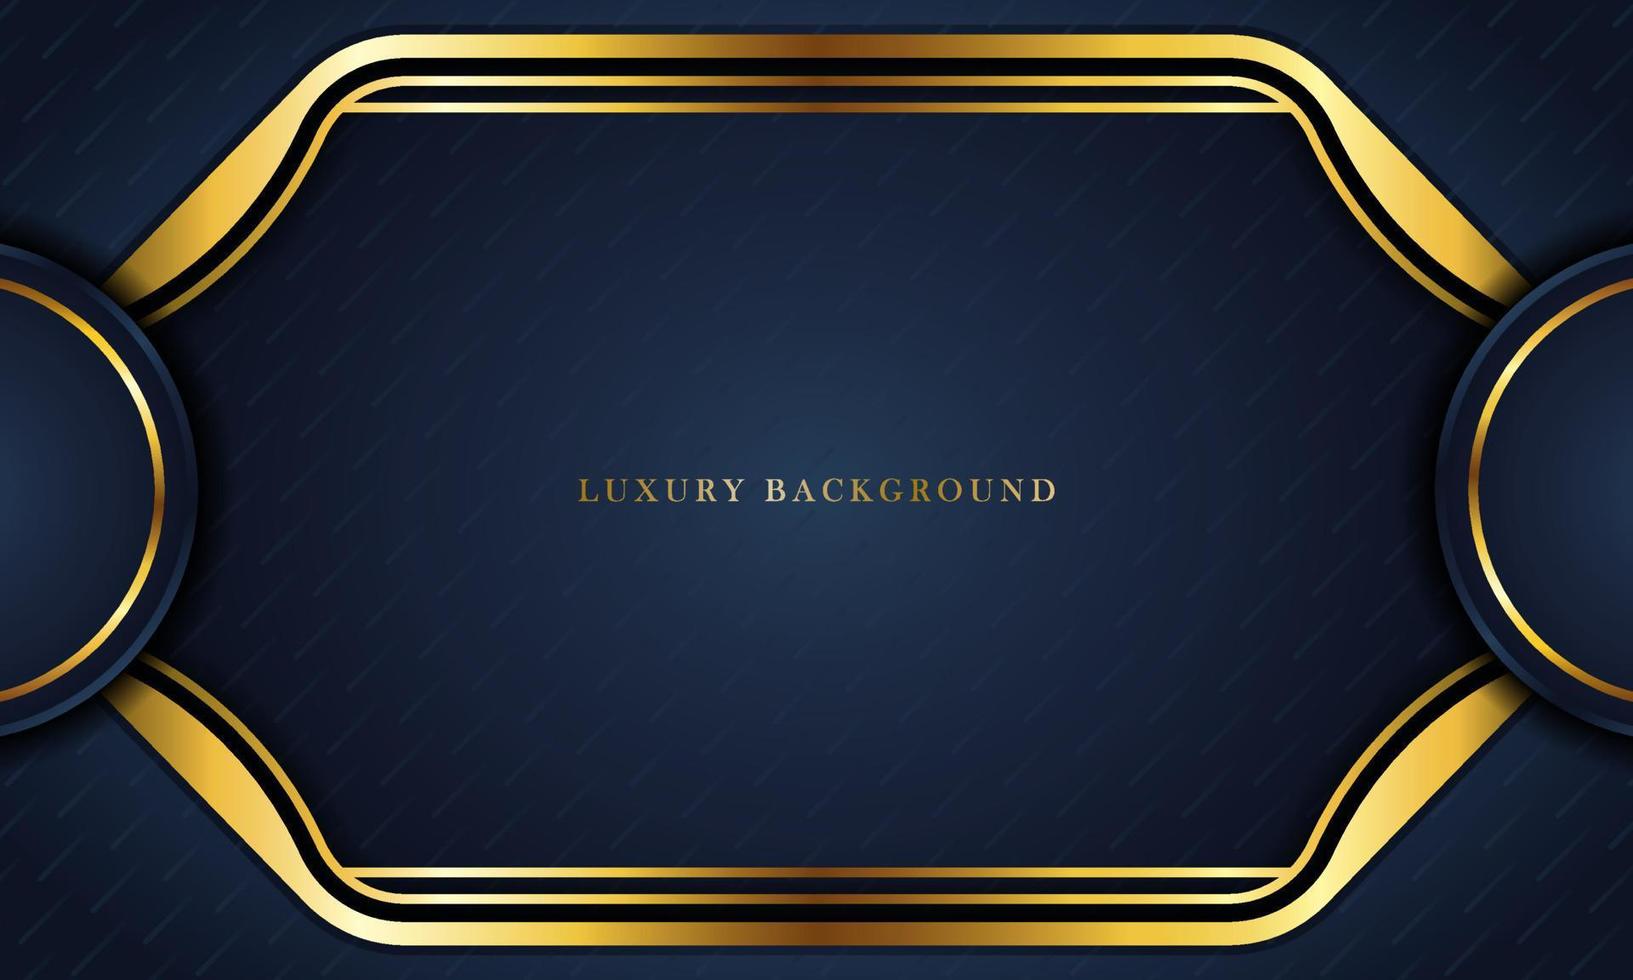 fond bleu foncé de luxe avec une combinaison de couleurs dorées, parfait pour les modèles, brochures, cartes de visite, bannières ou fonds d'écran. conception élégante. vecteur